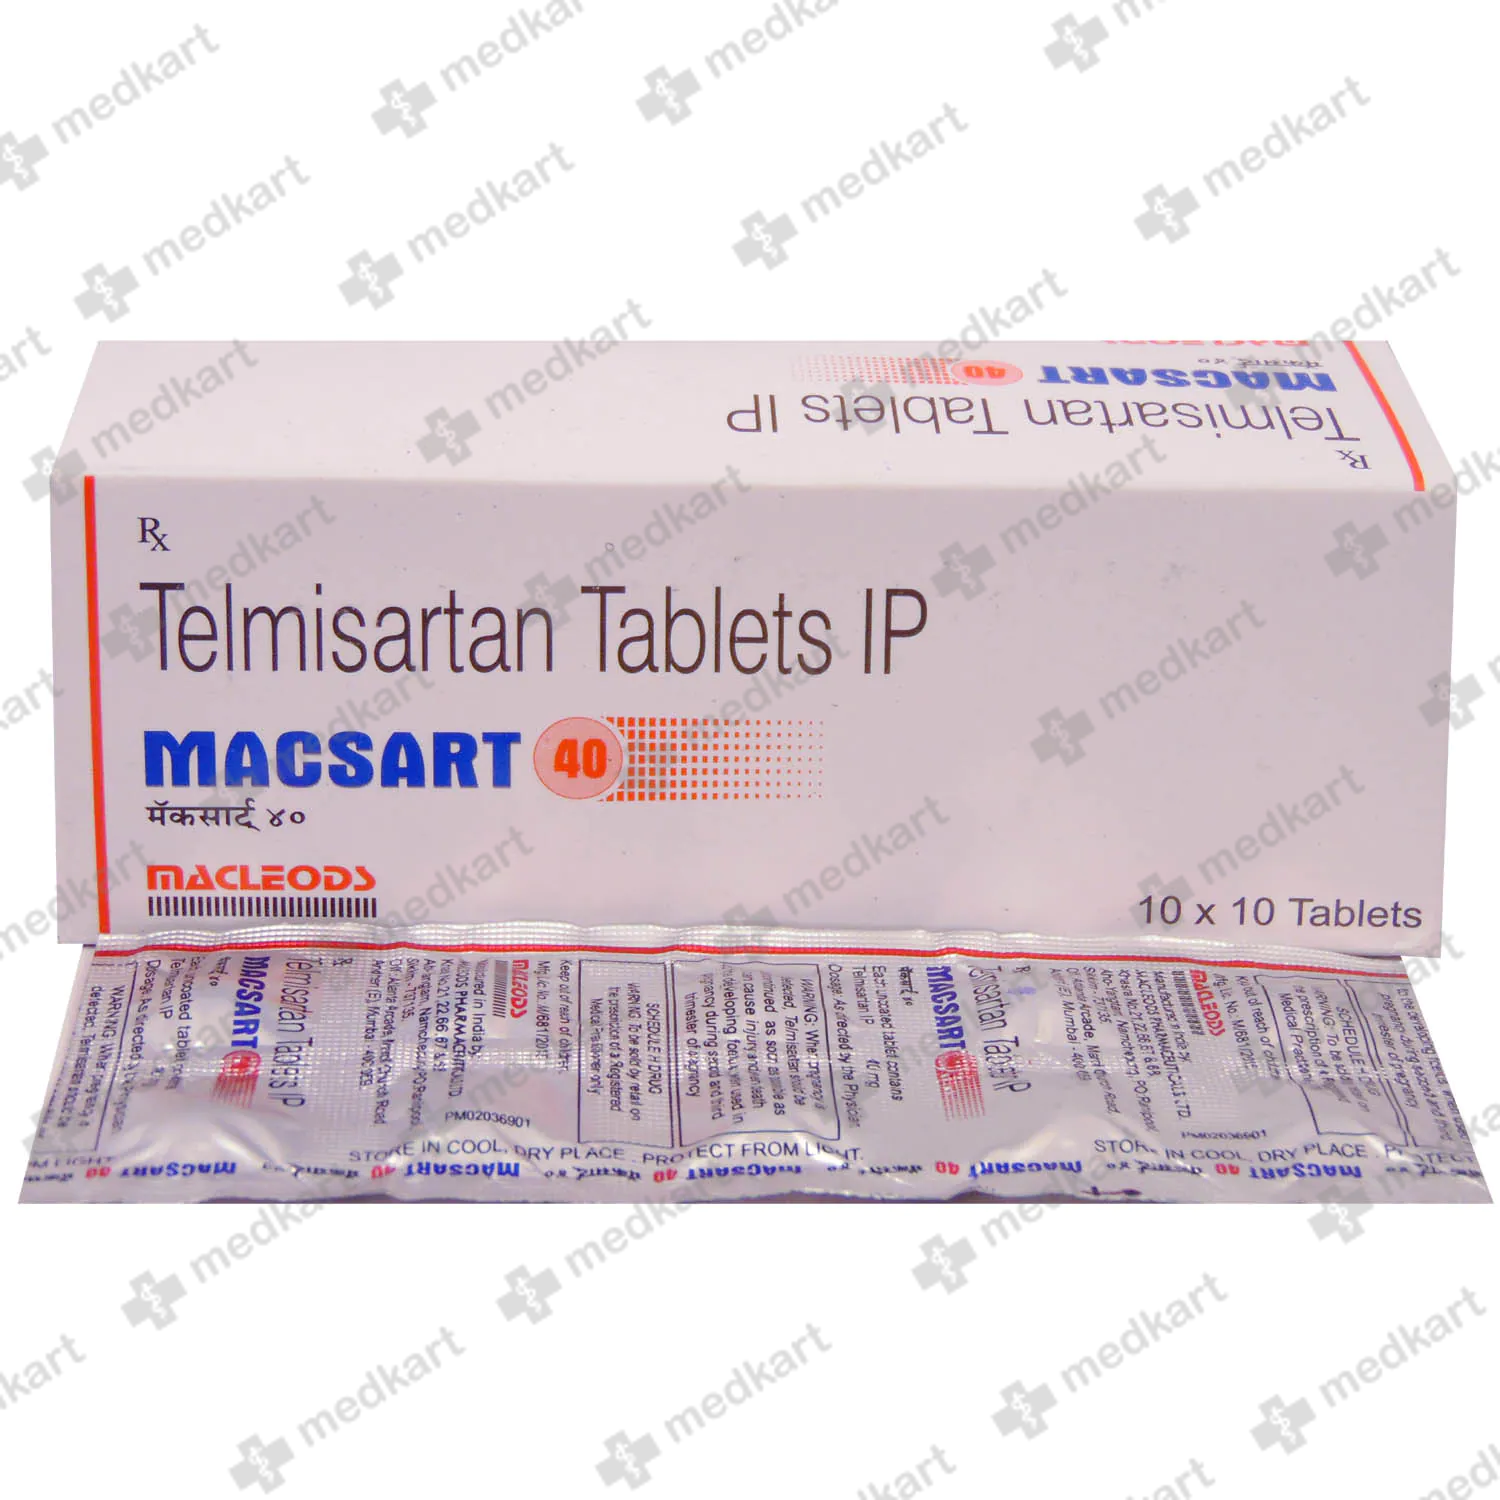 macsart-40mg-tablet-10s